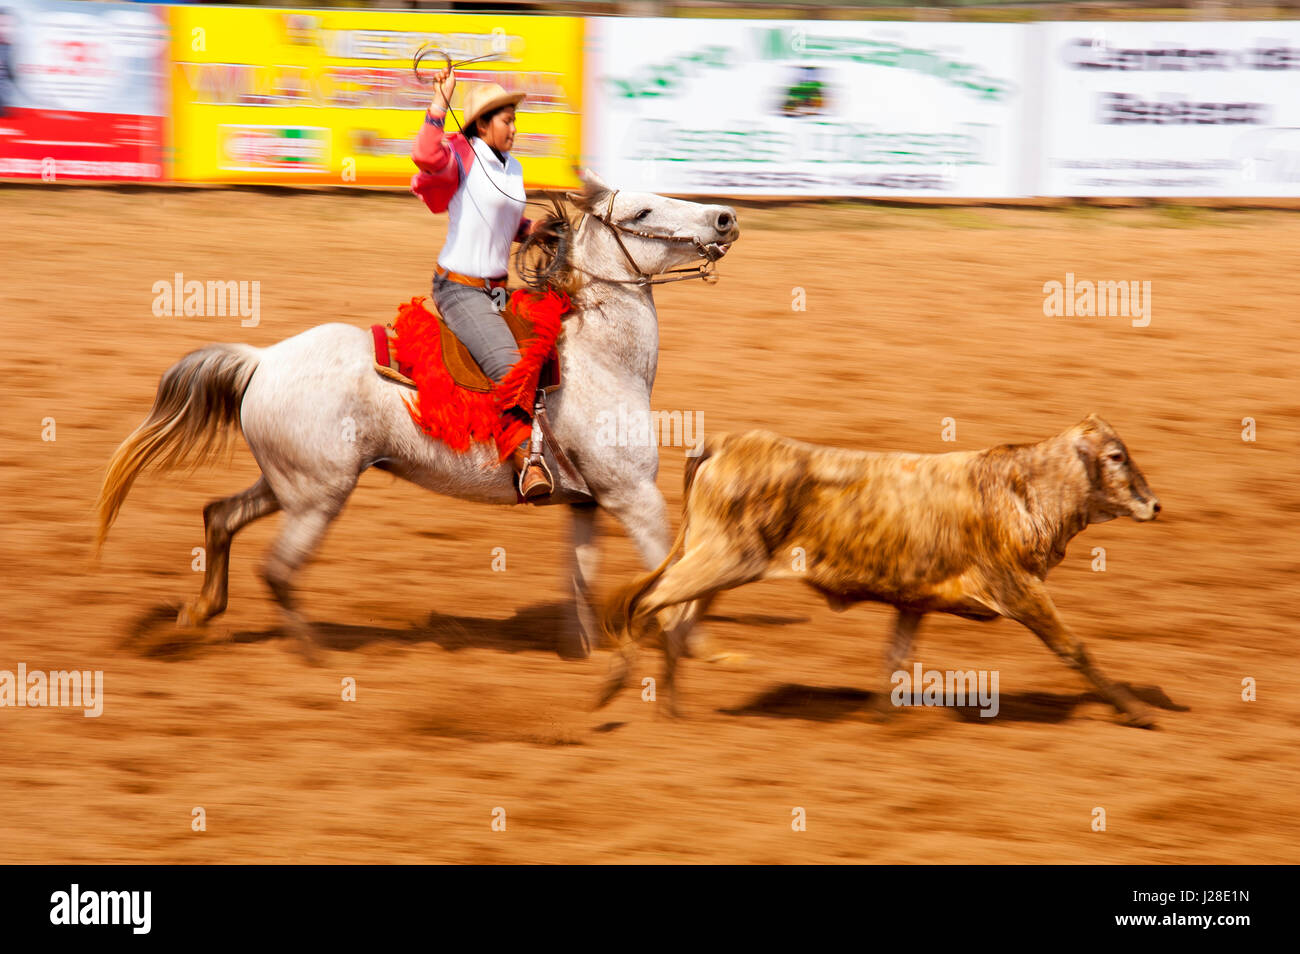 Rodeo is a popular pastime in Mato Grosso do Sul, Bonito town, Brazil Stock Photo